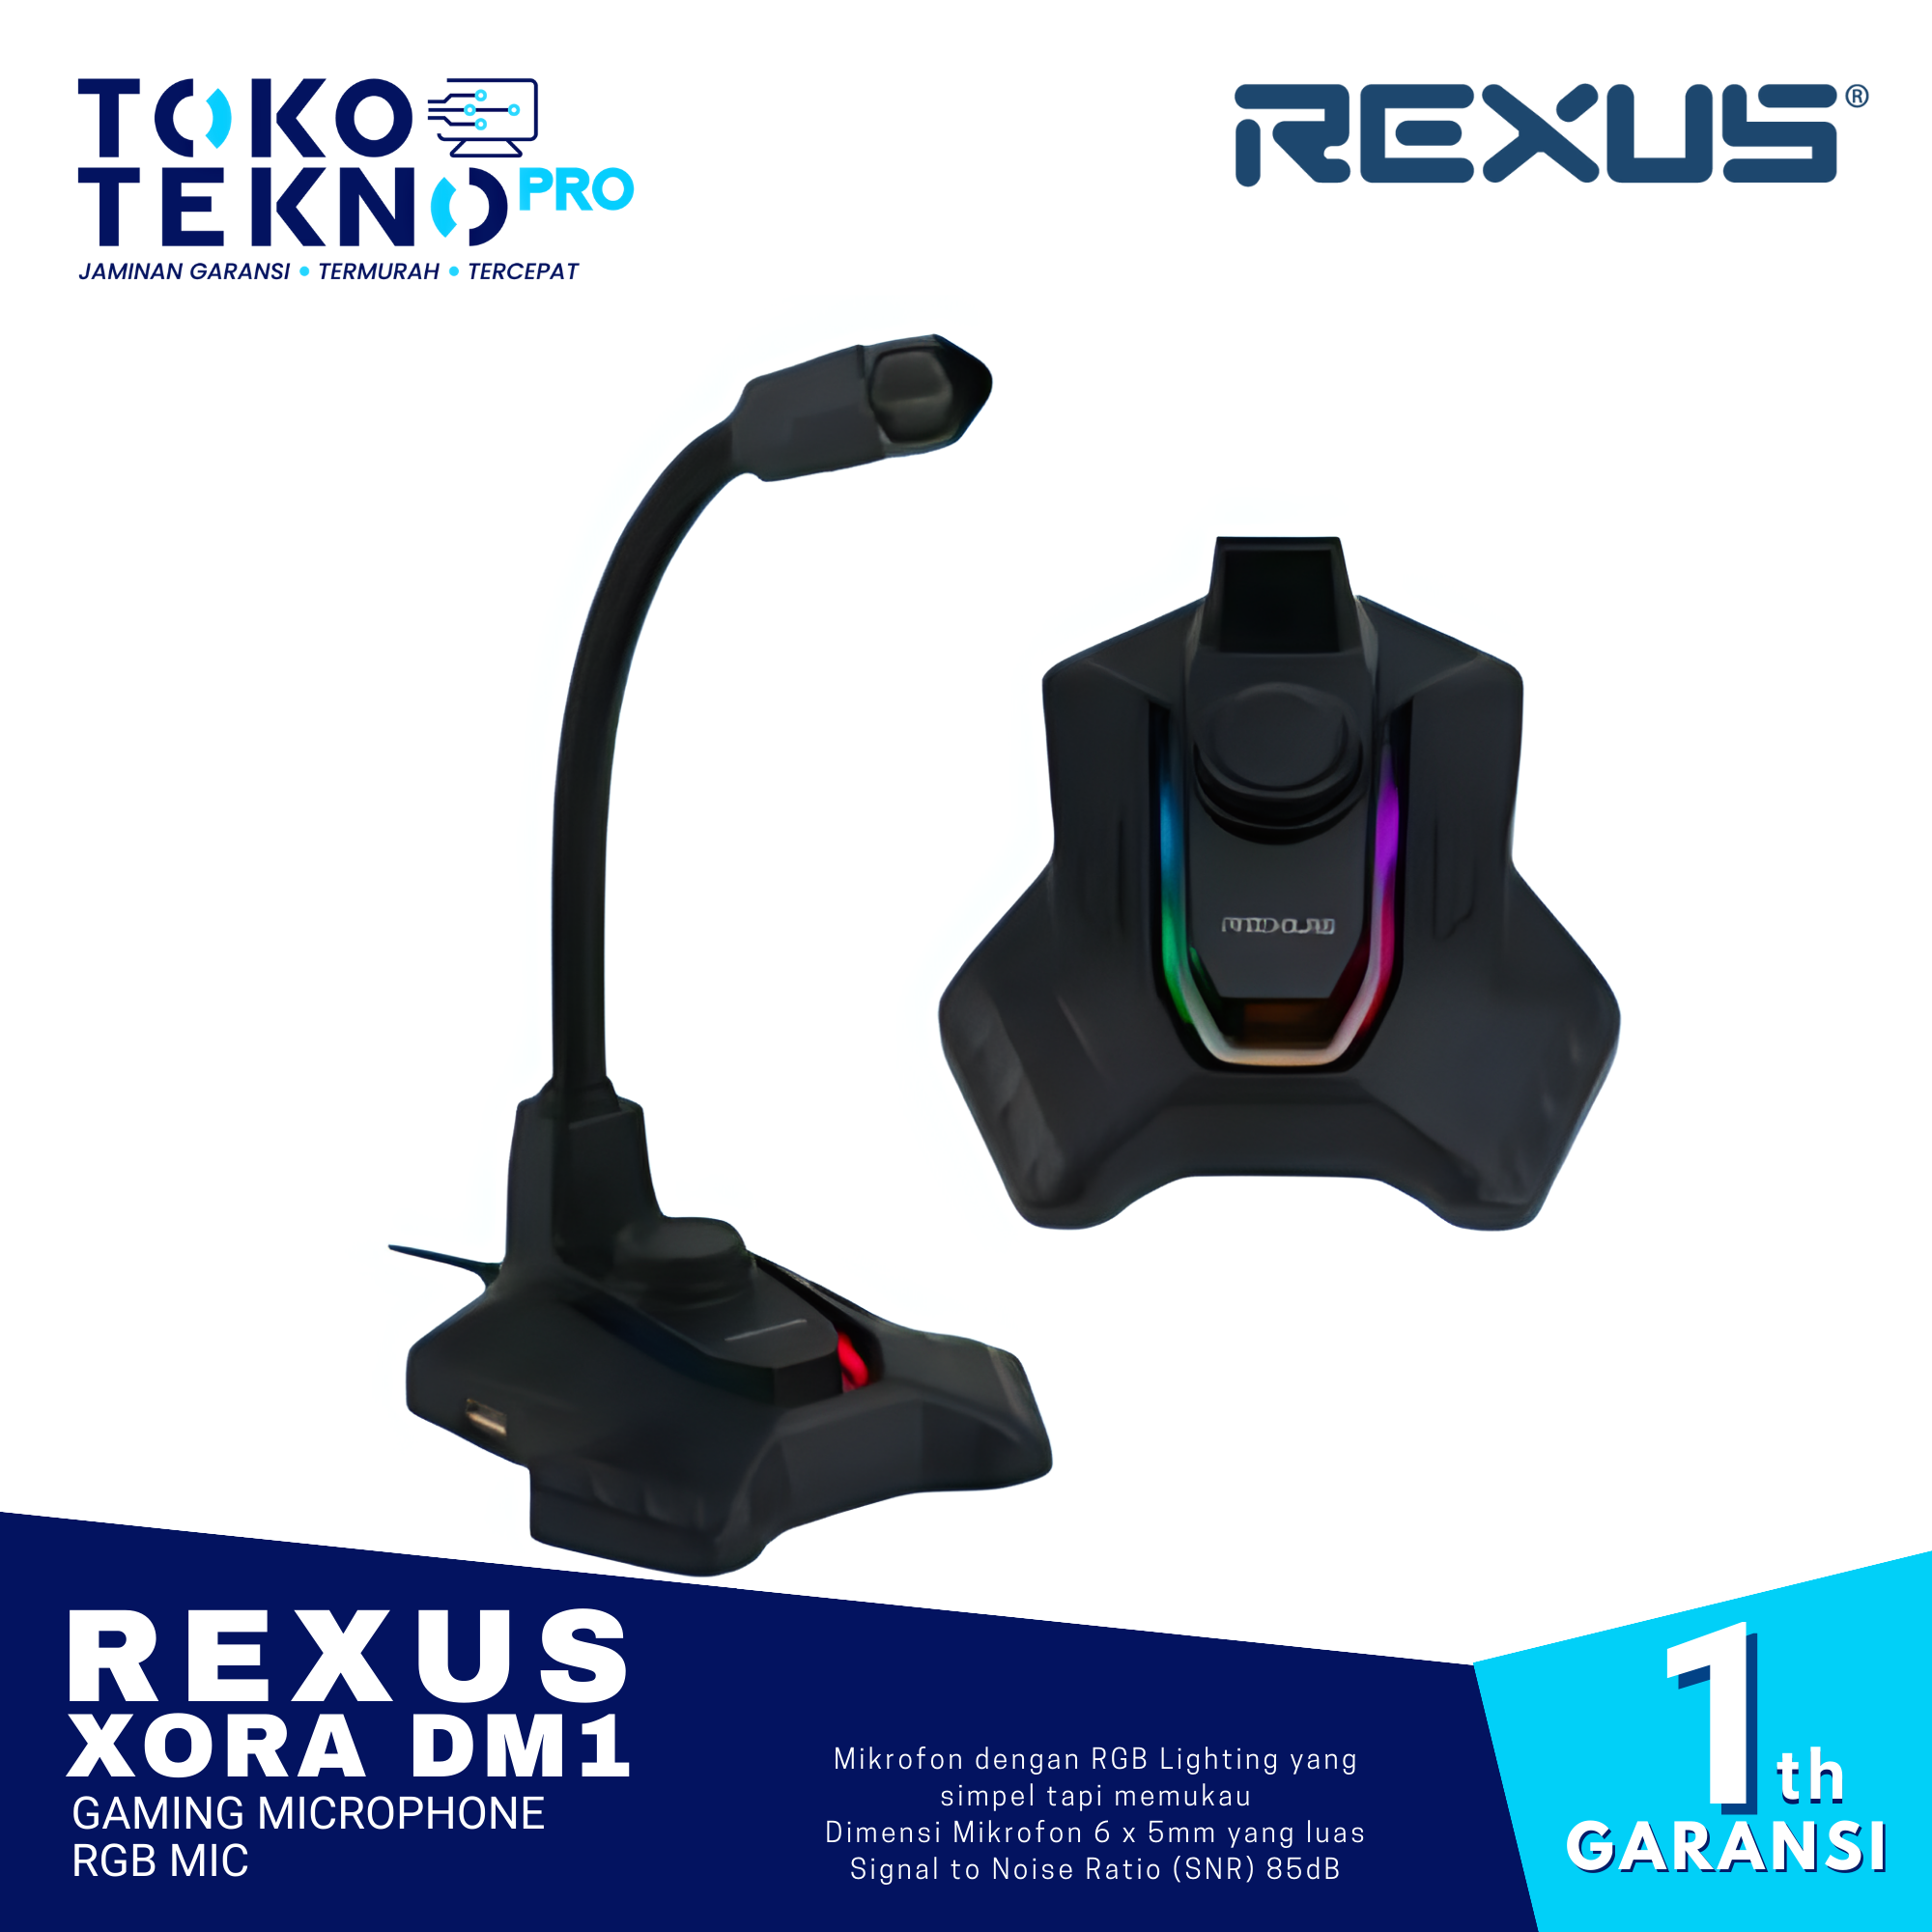 Rexus Xora DM1 Gaming Microphone RGB Mic